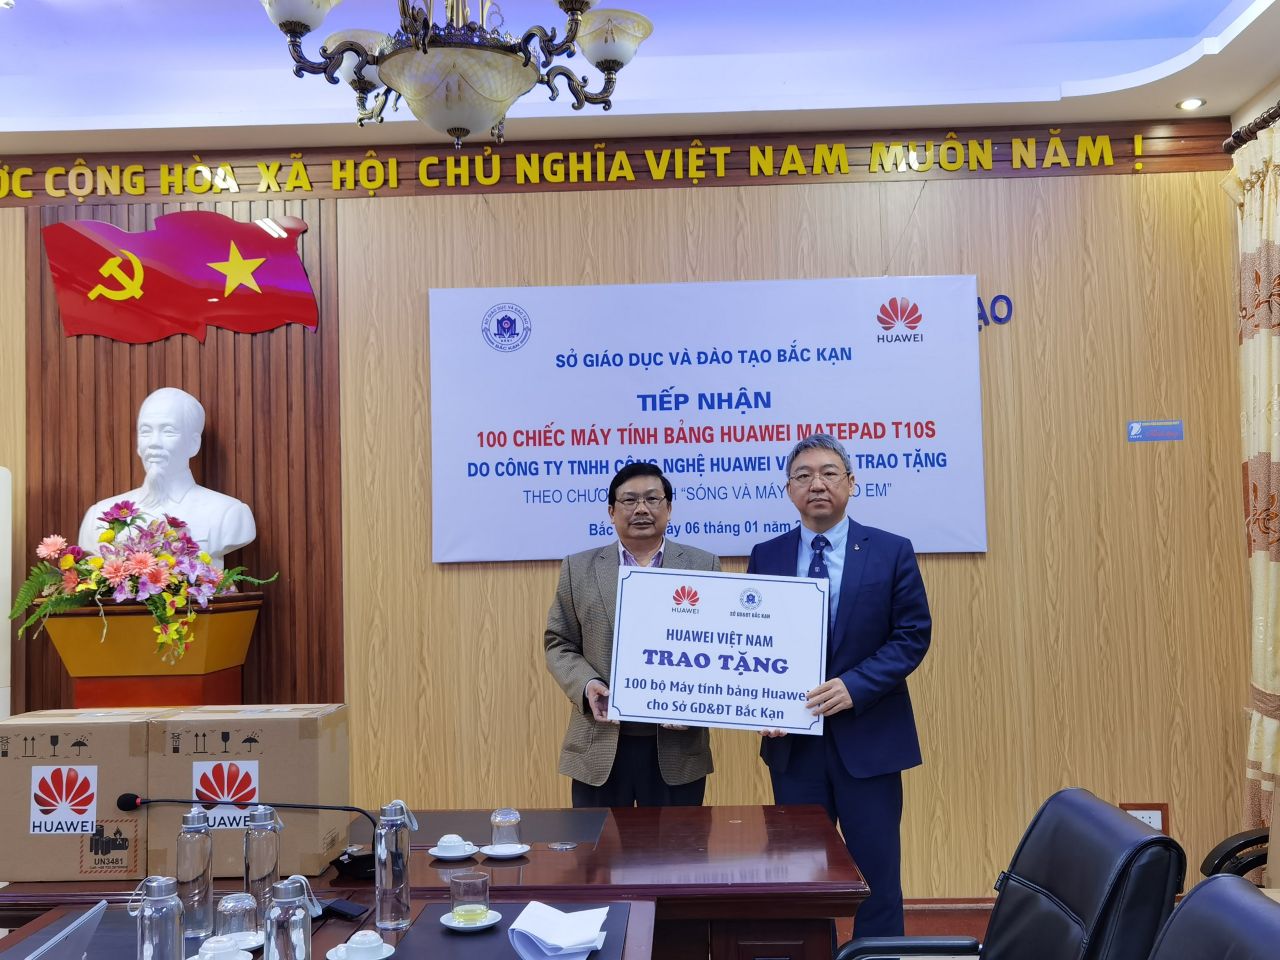 Huawei Việt Nam trao tặng 100 bộ máy tính bảng cho Sở Giáo Dục Đào Tạo tỉnh Bắc Kạn 2 Huawei Việt Nam thực hiện chuỗi hoạt động hỗ trợ giáo dục tại vùng cao